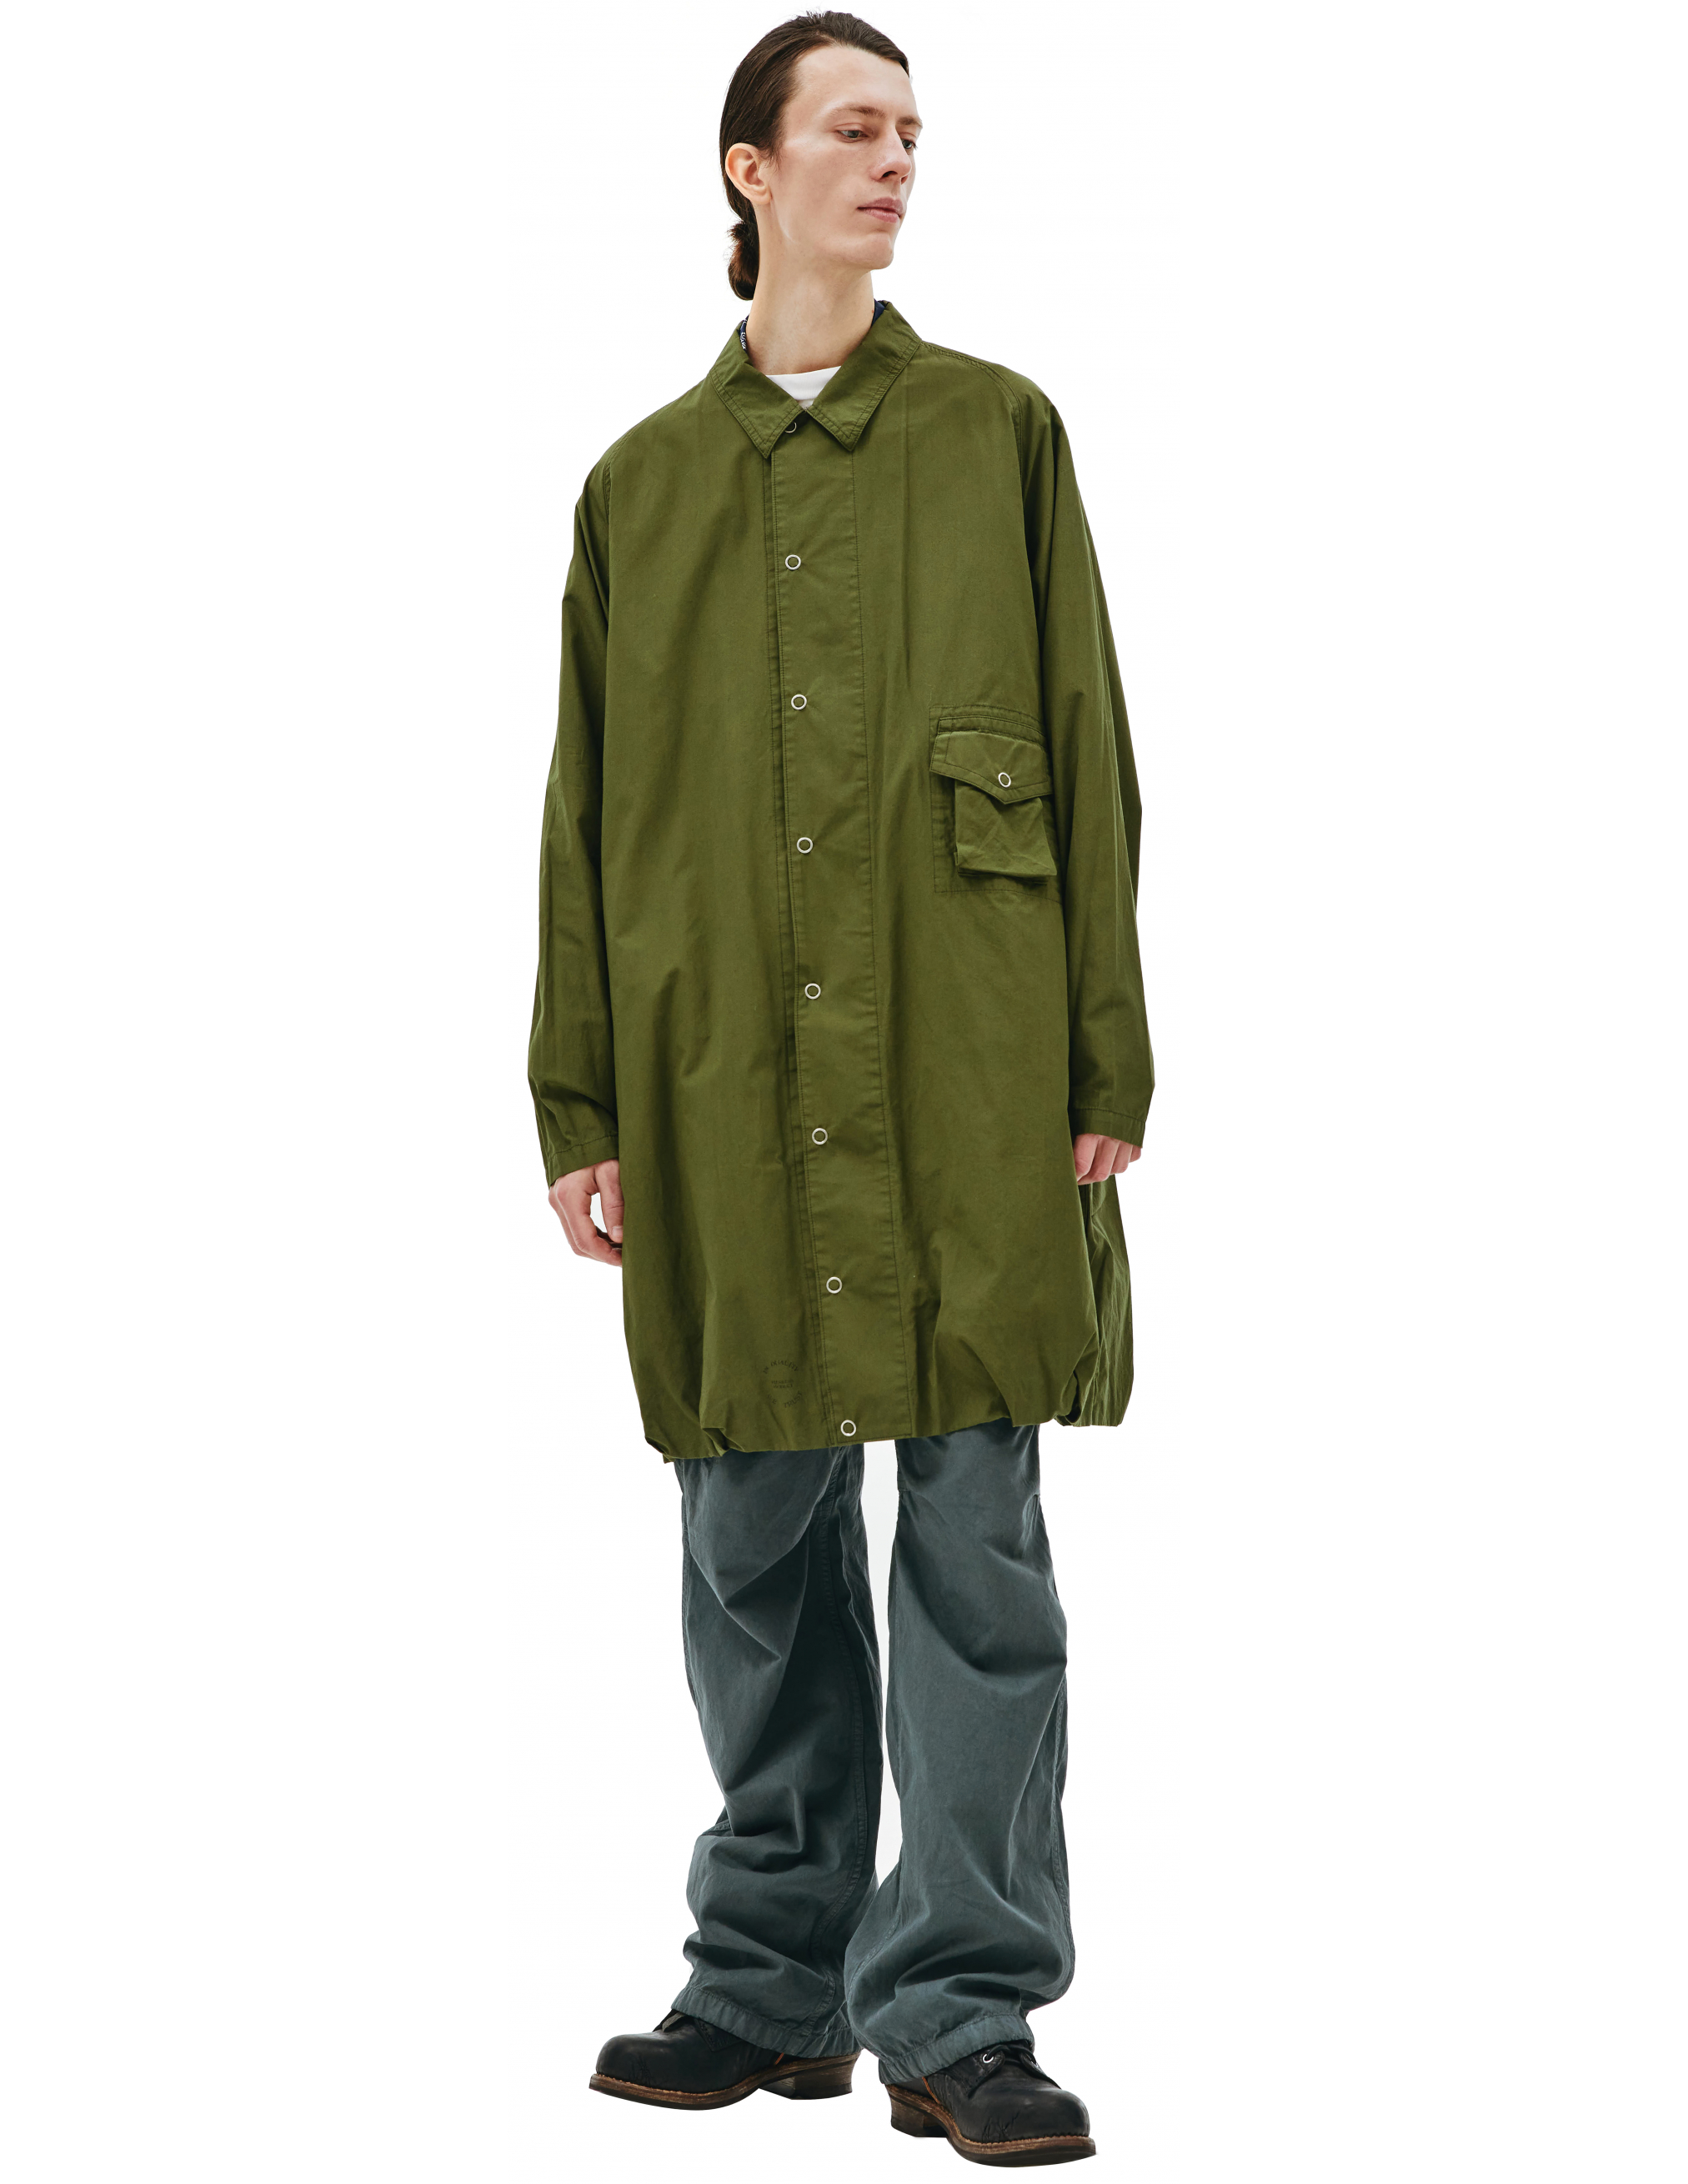 Пальто из хлопка с накладным карманом Visvim 0121205013027/olive, размер 5;4 0121205013027/olive - фото 1